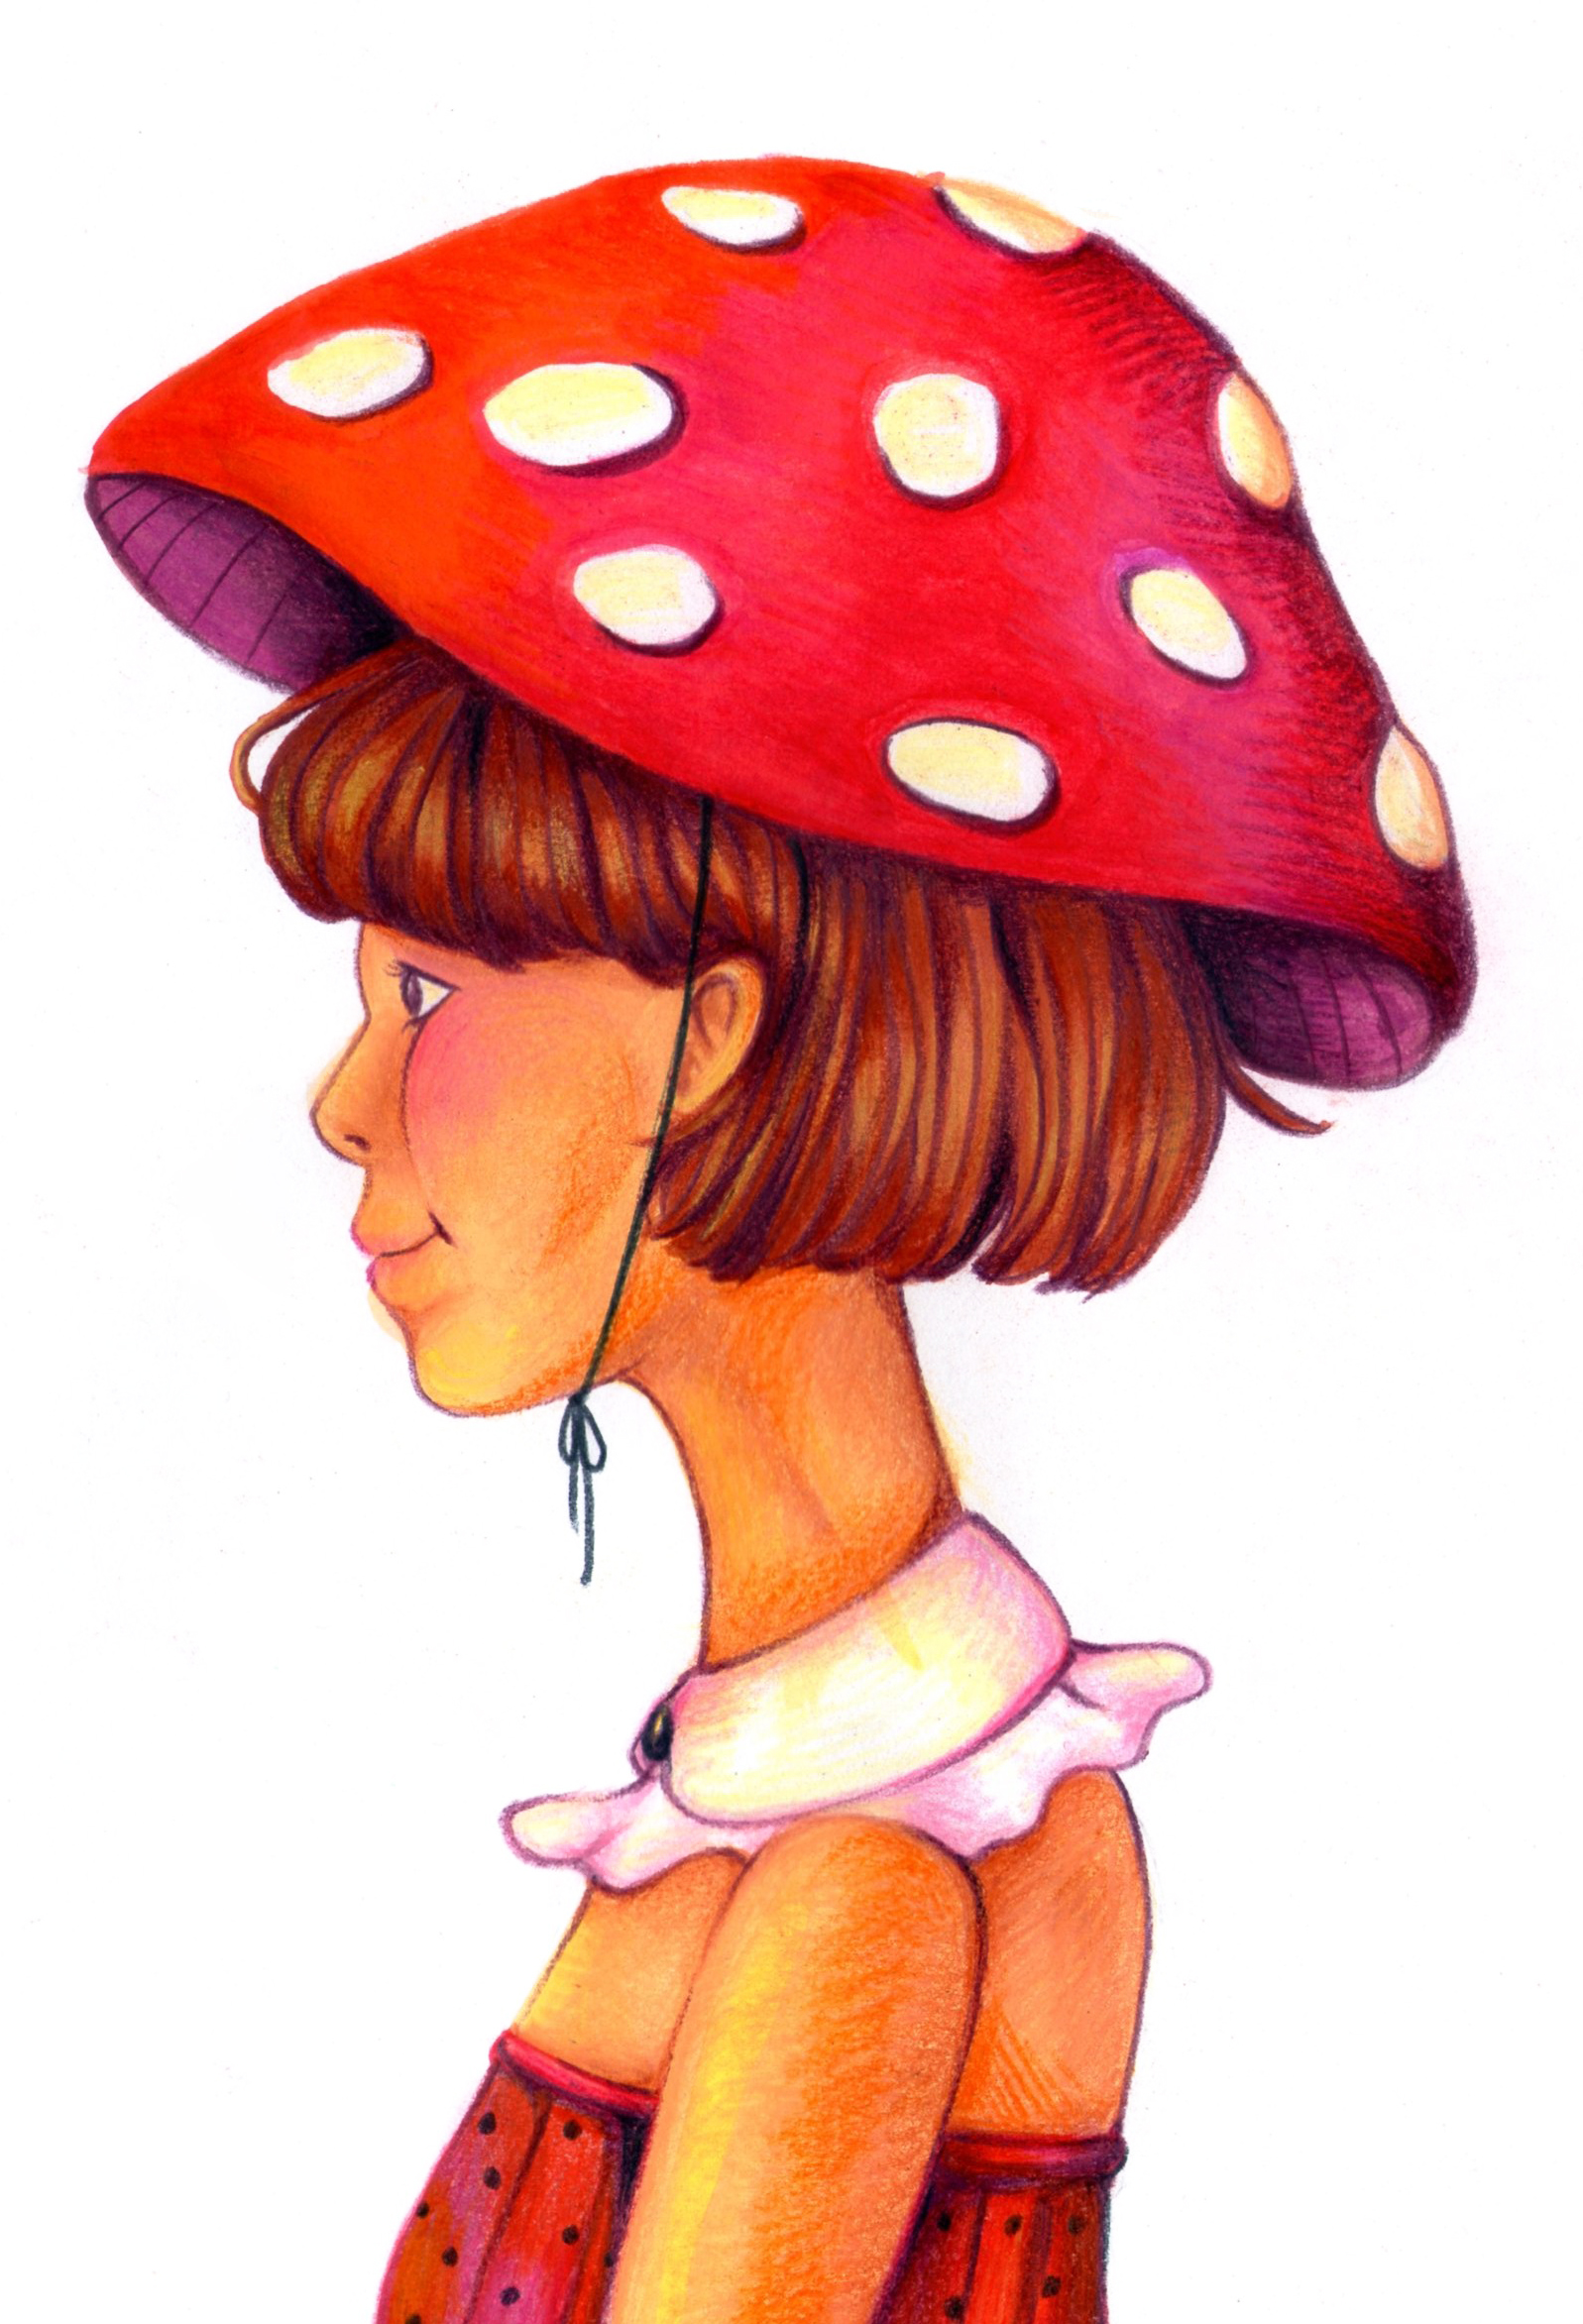 eat mushroom